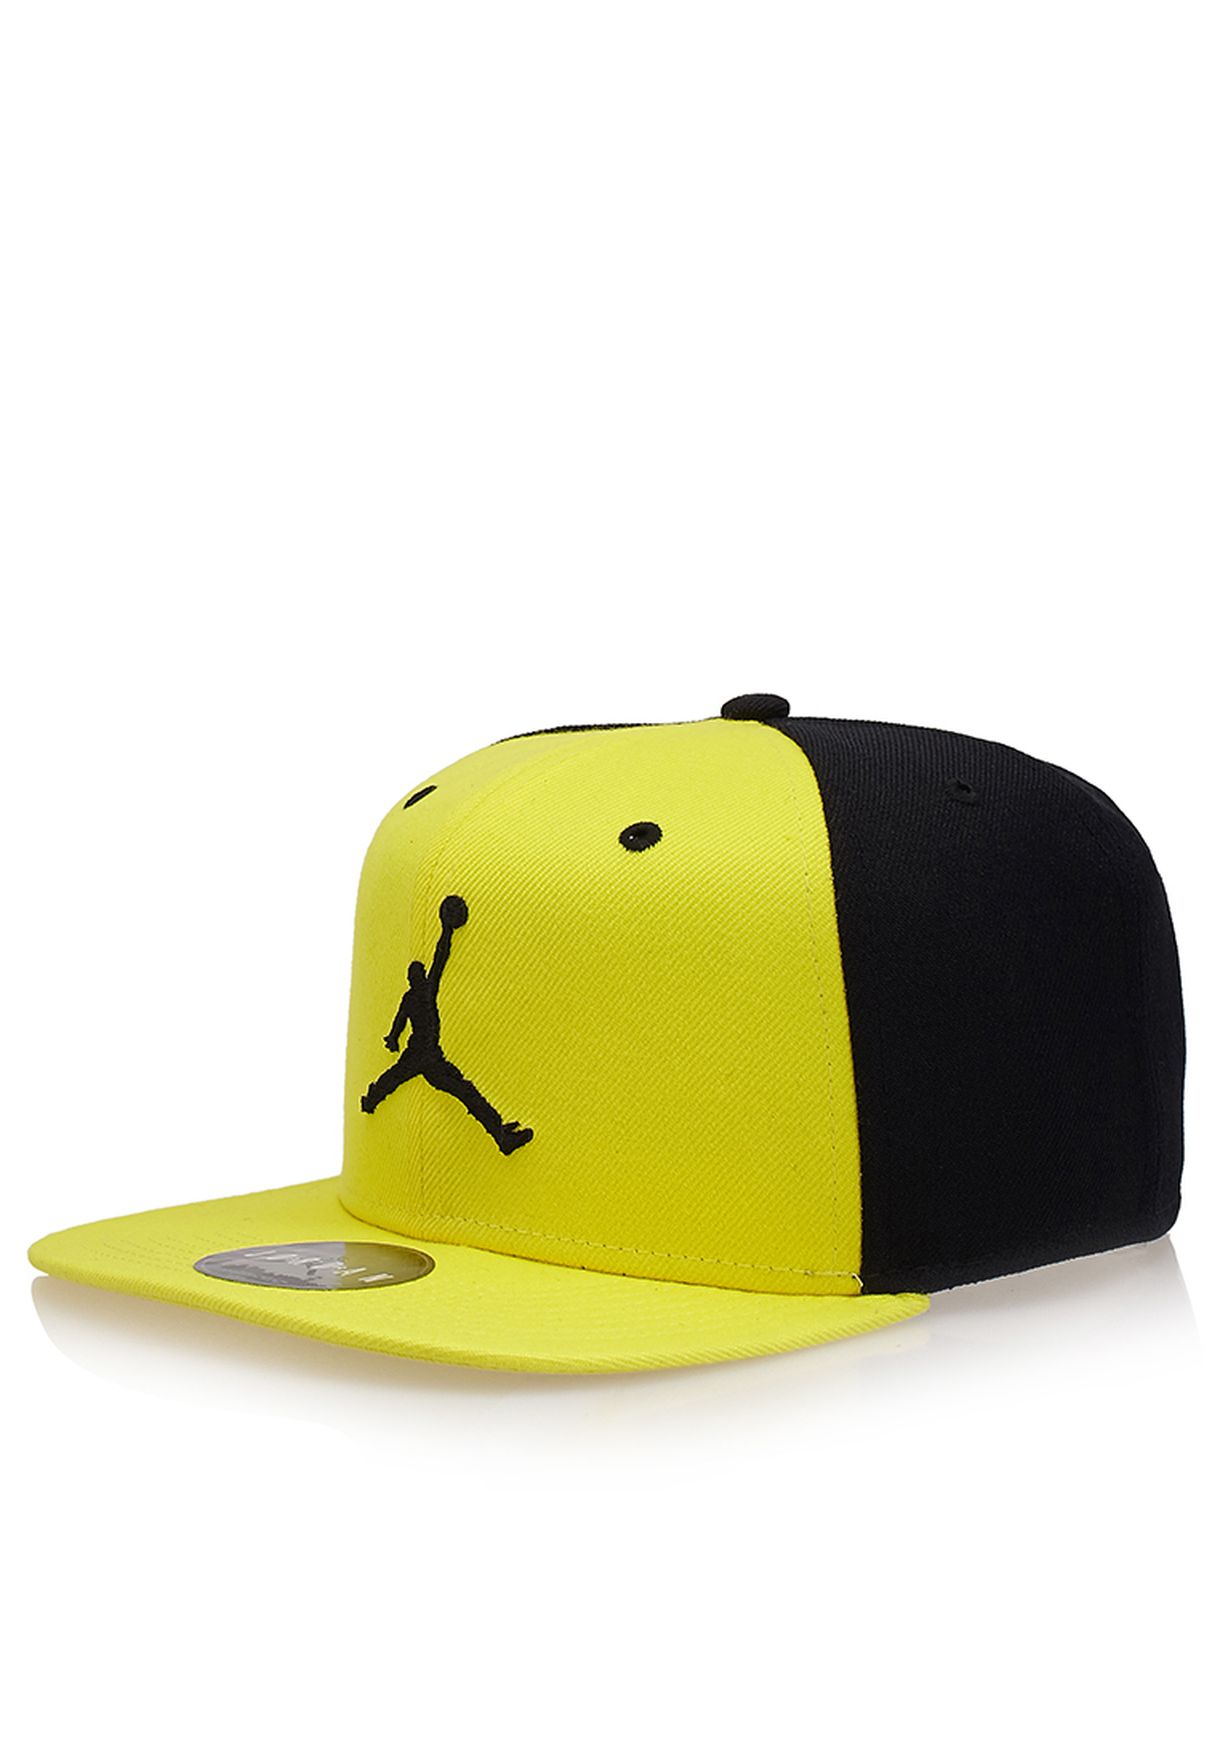 Buy Nike yellow Jordan Jumpman Cap for 